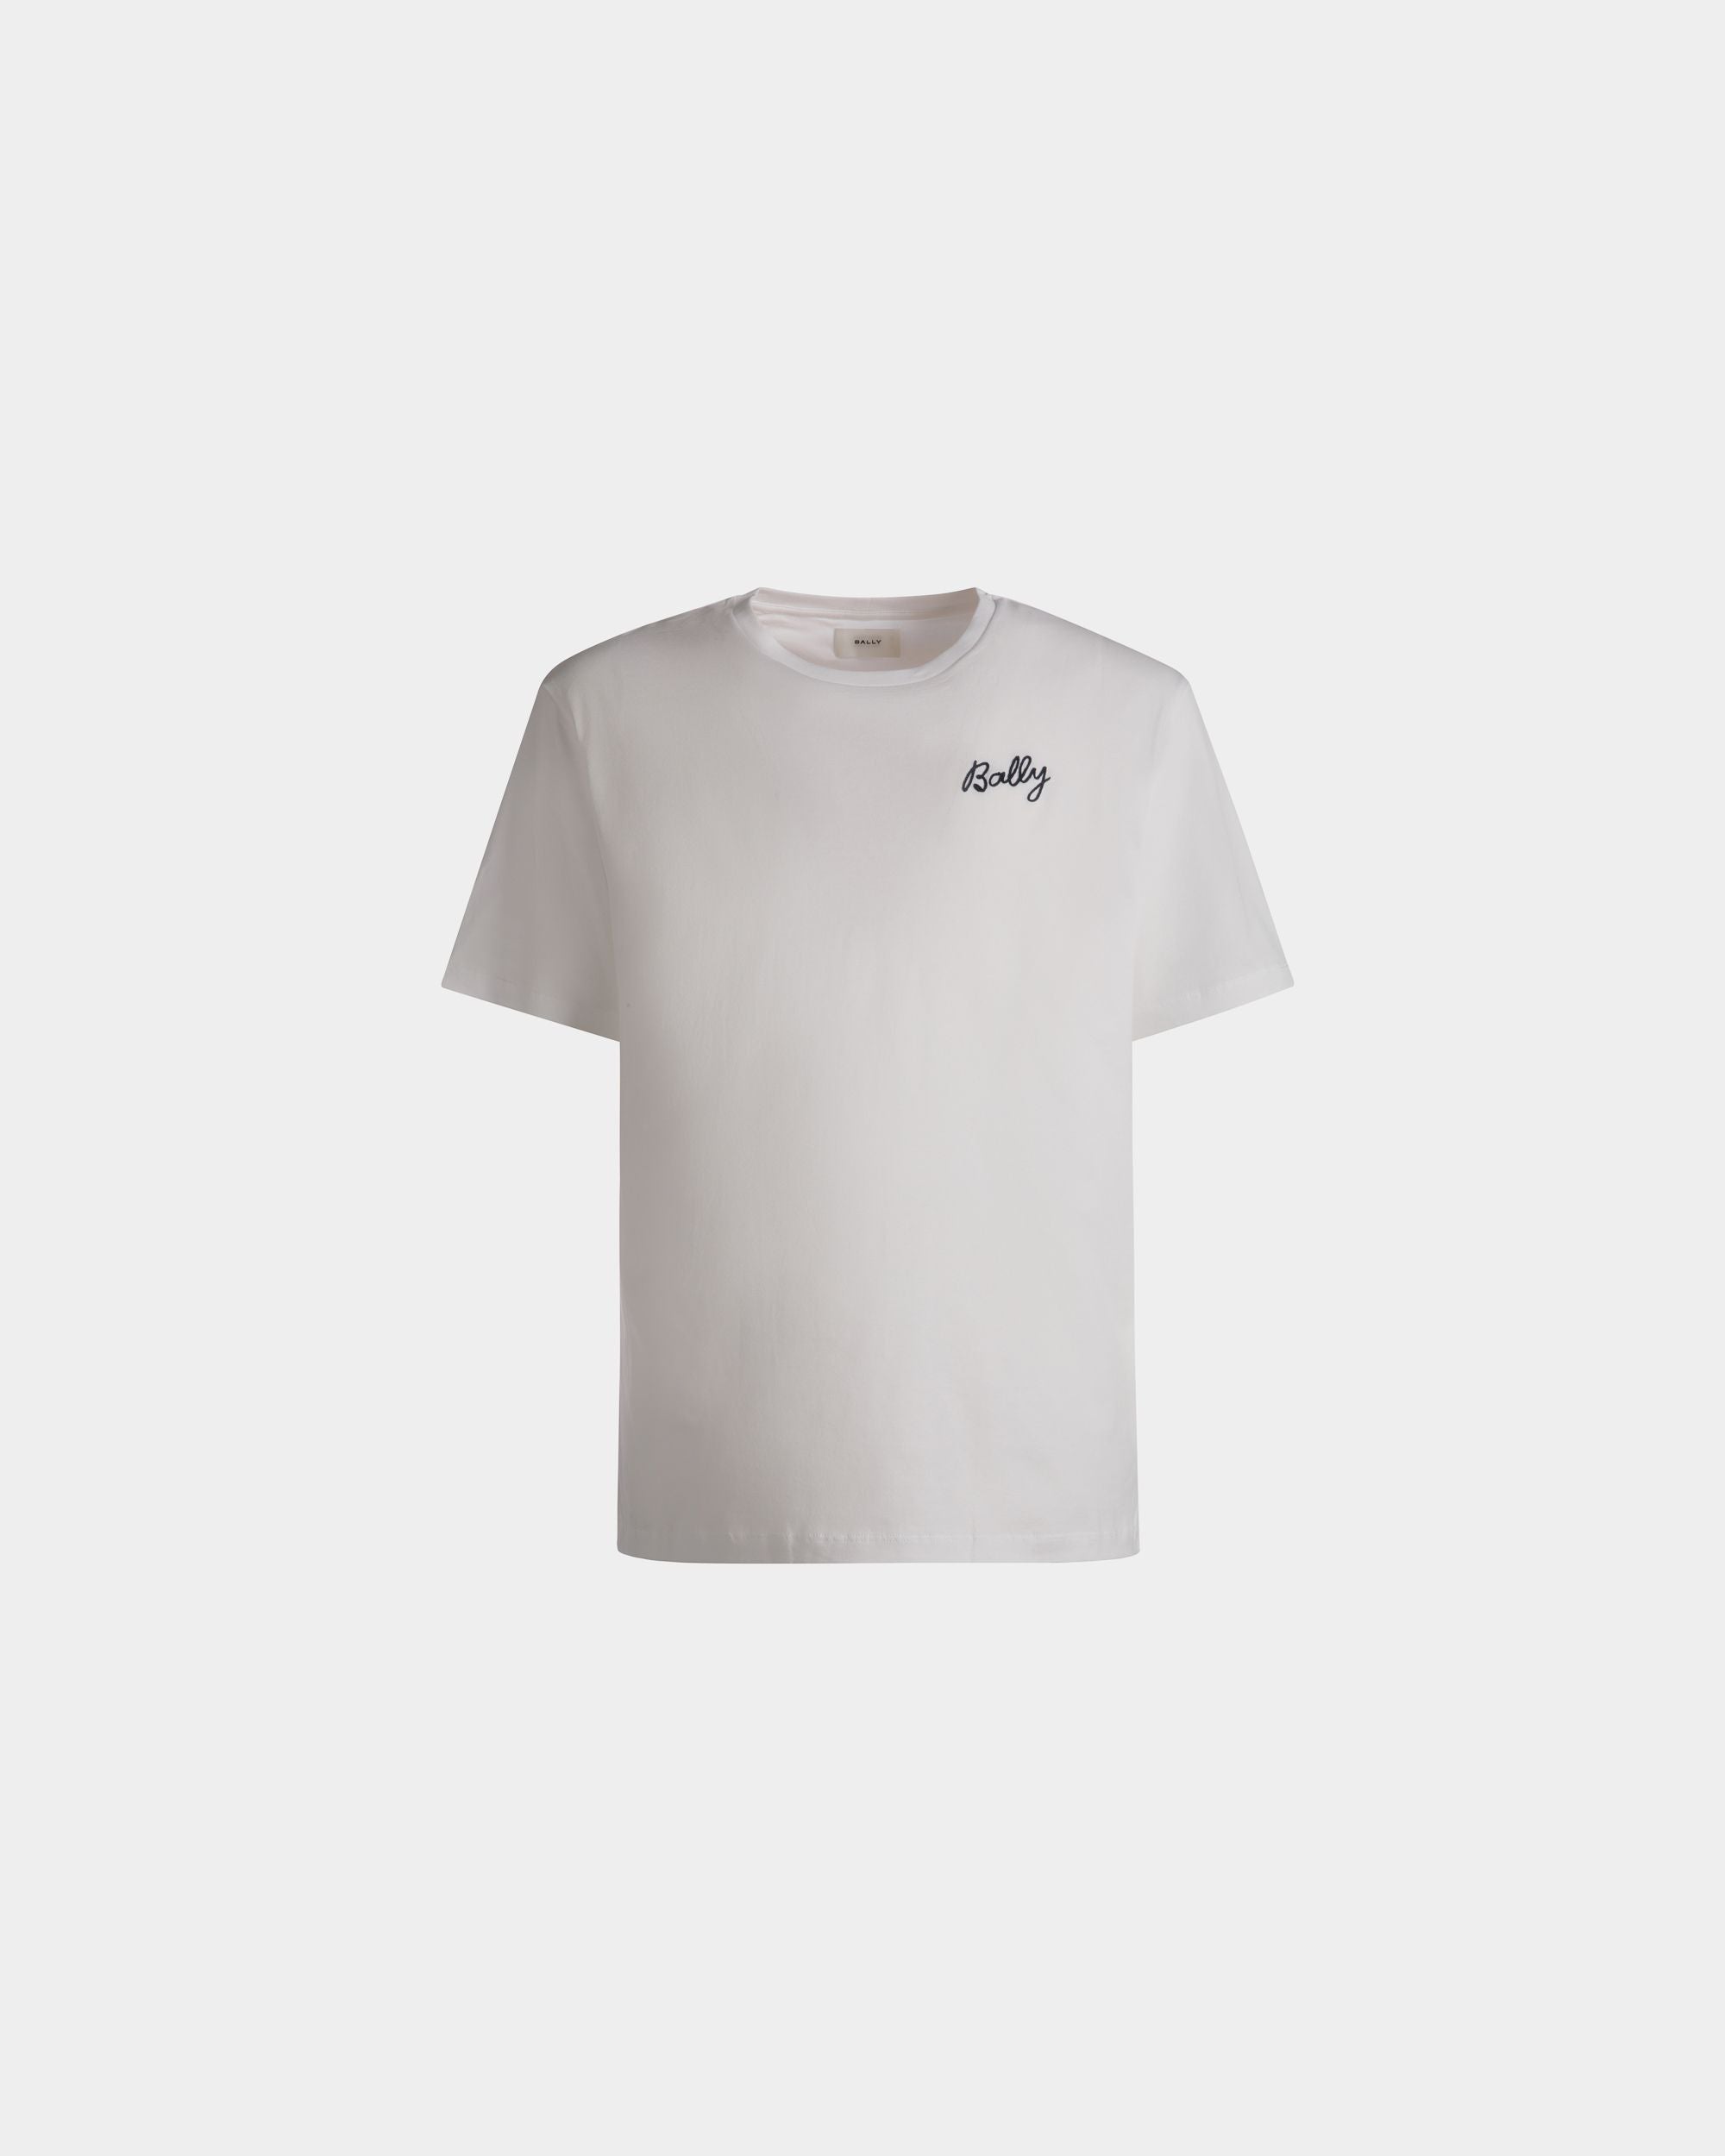 T-shirt da uomo in cotone bianco | Bally | Still Life Fronte